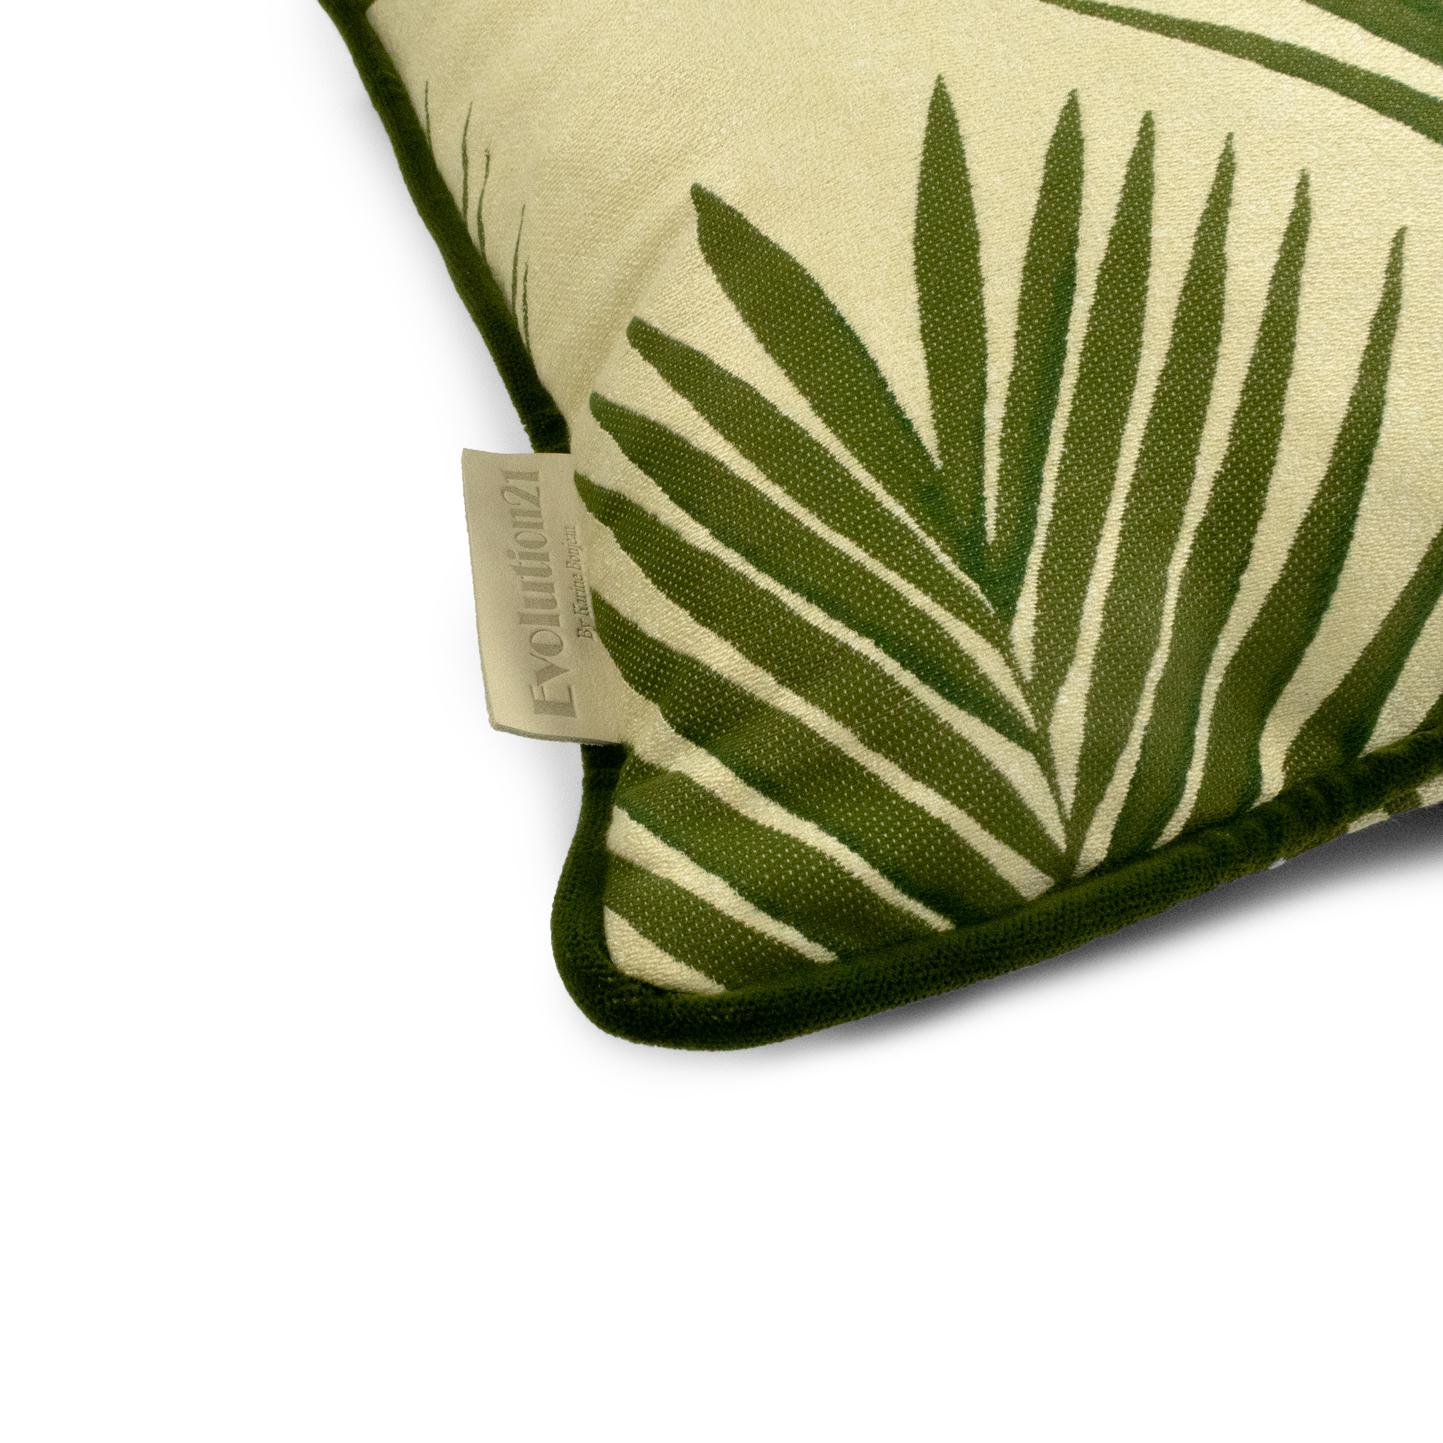 Ein tropisches Muster in dezenten Tönen, unser Bambusblatt-Stoffbezug ist warm und verspielt. Das Kissen erinnert an eine andere Umgebung und verleiht sowohl Innen- als auch Außenbereichen ein natürliches Aussehen. 

Wählen Sie ähnliche Farben in